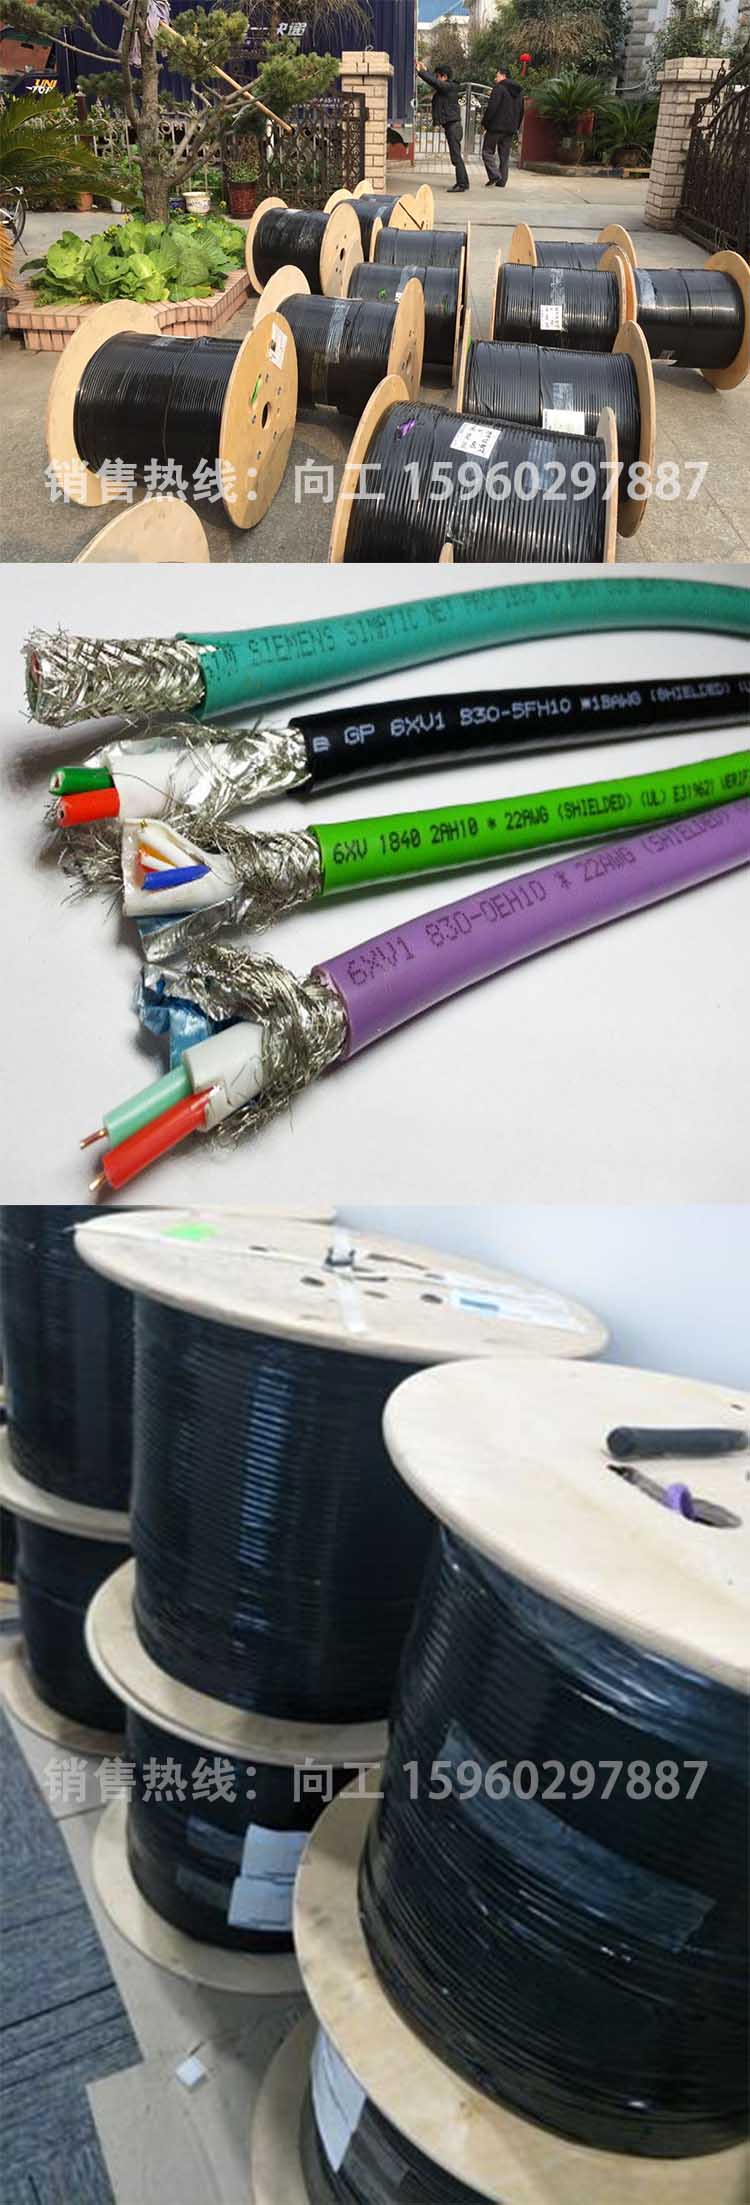 西门子RS485通讯电缆6XV1840-2AH10型号及功能介绍